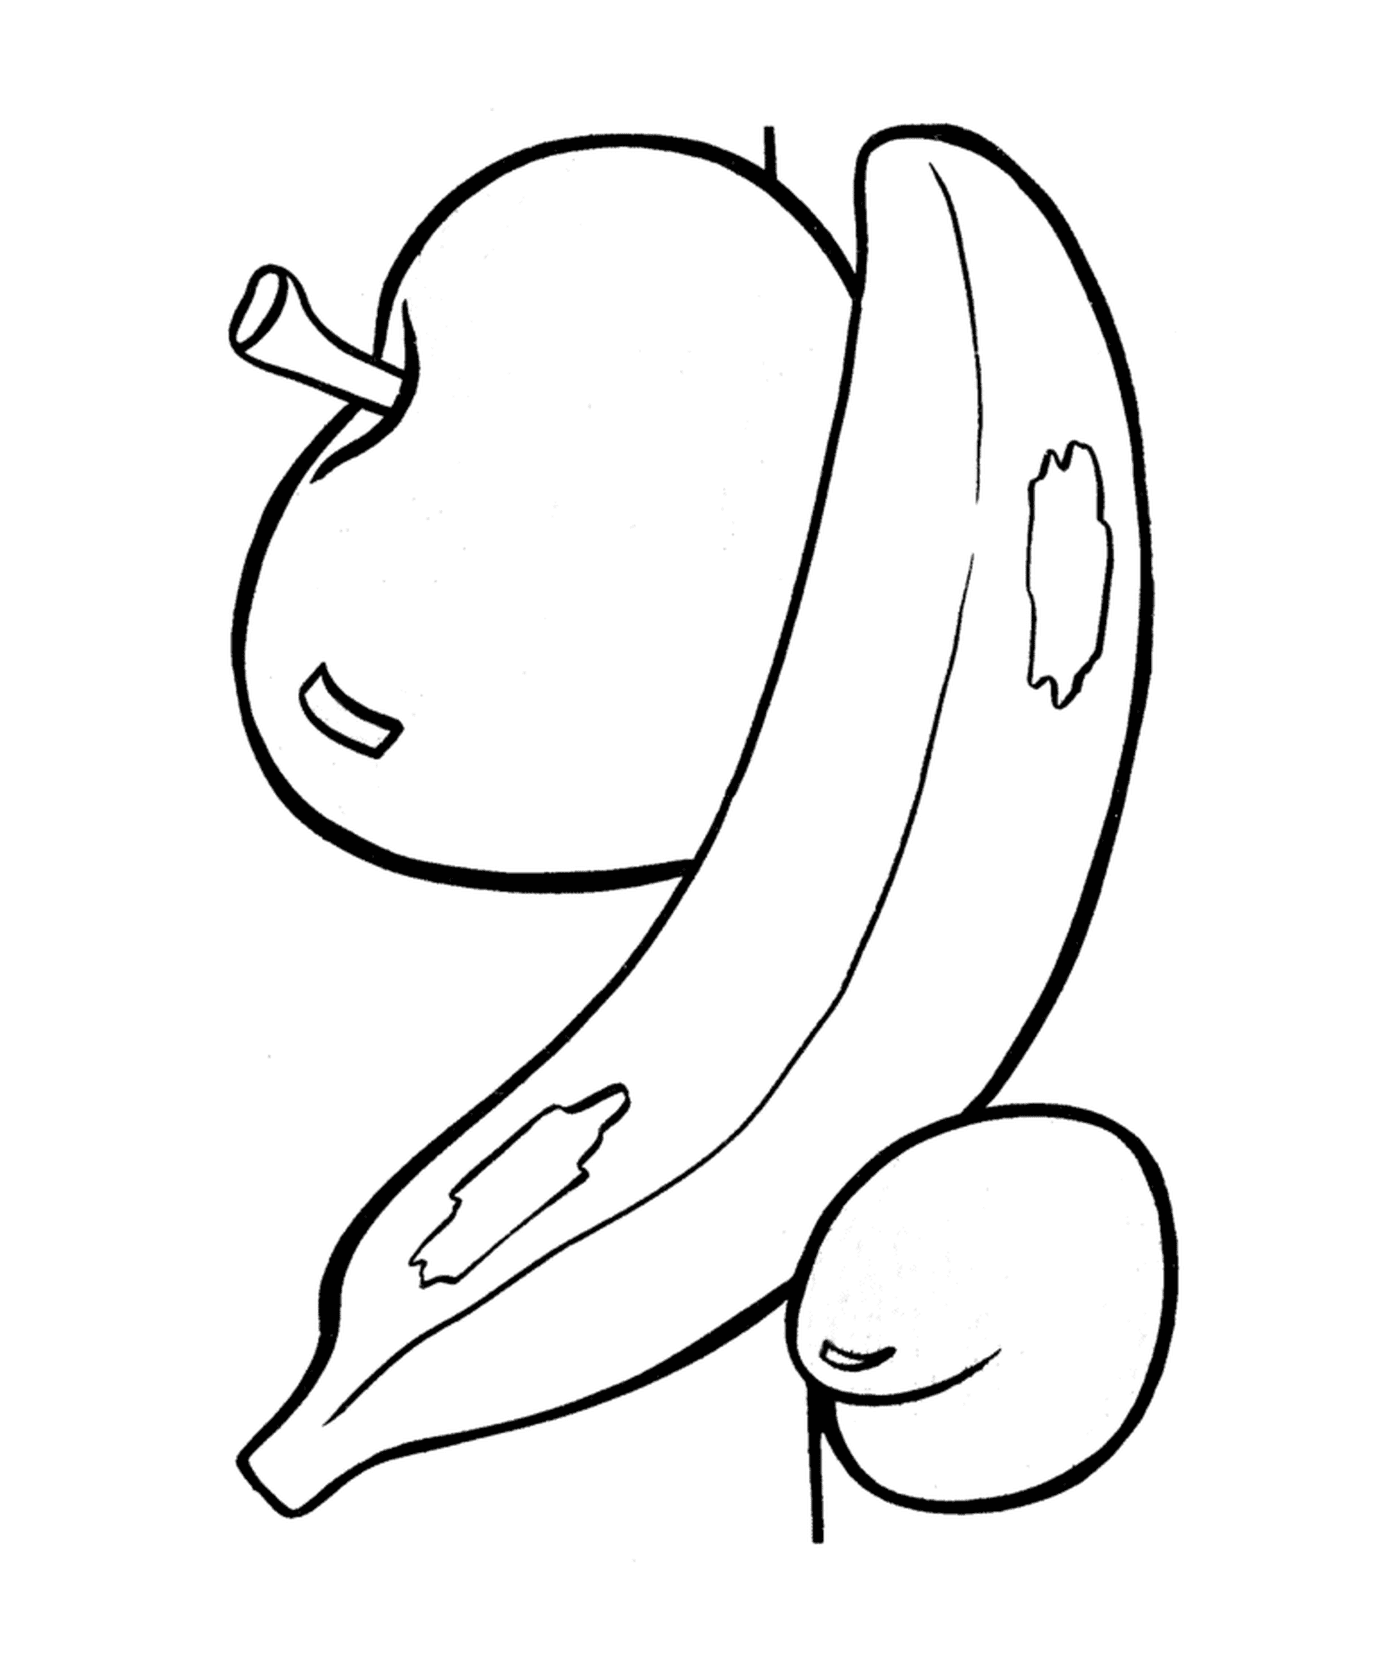  Una mela con sopra una banana 